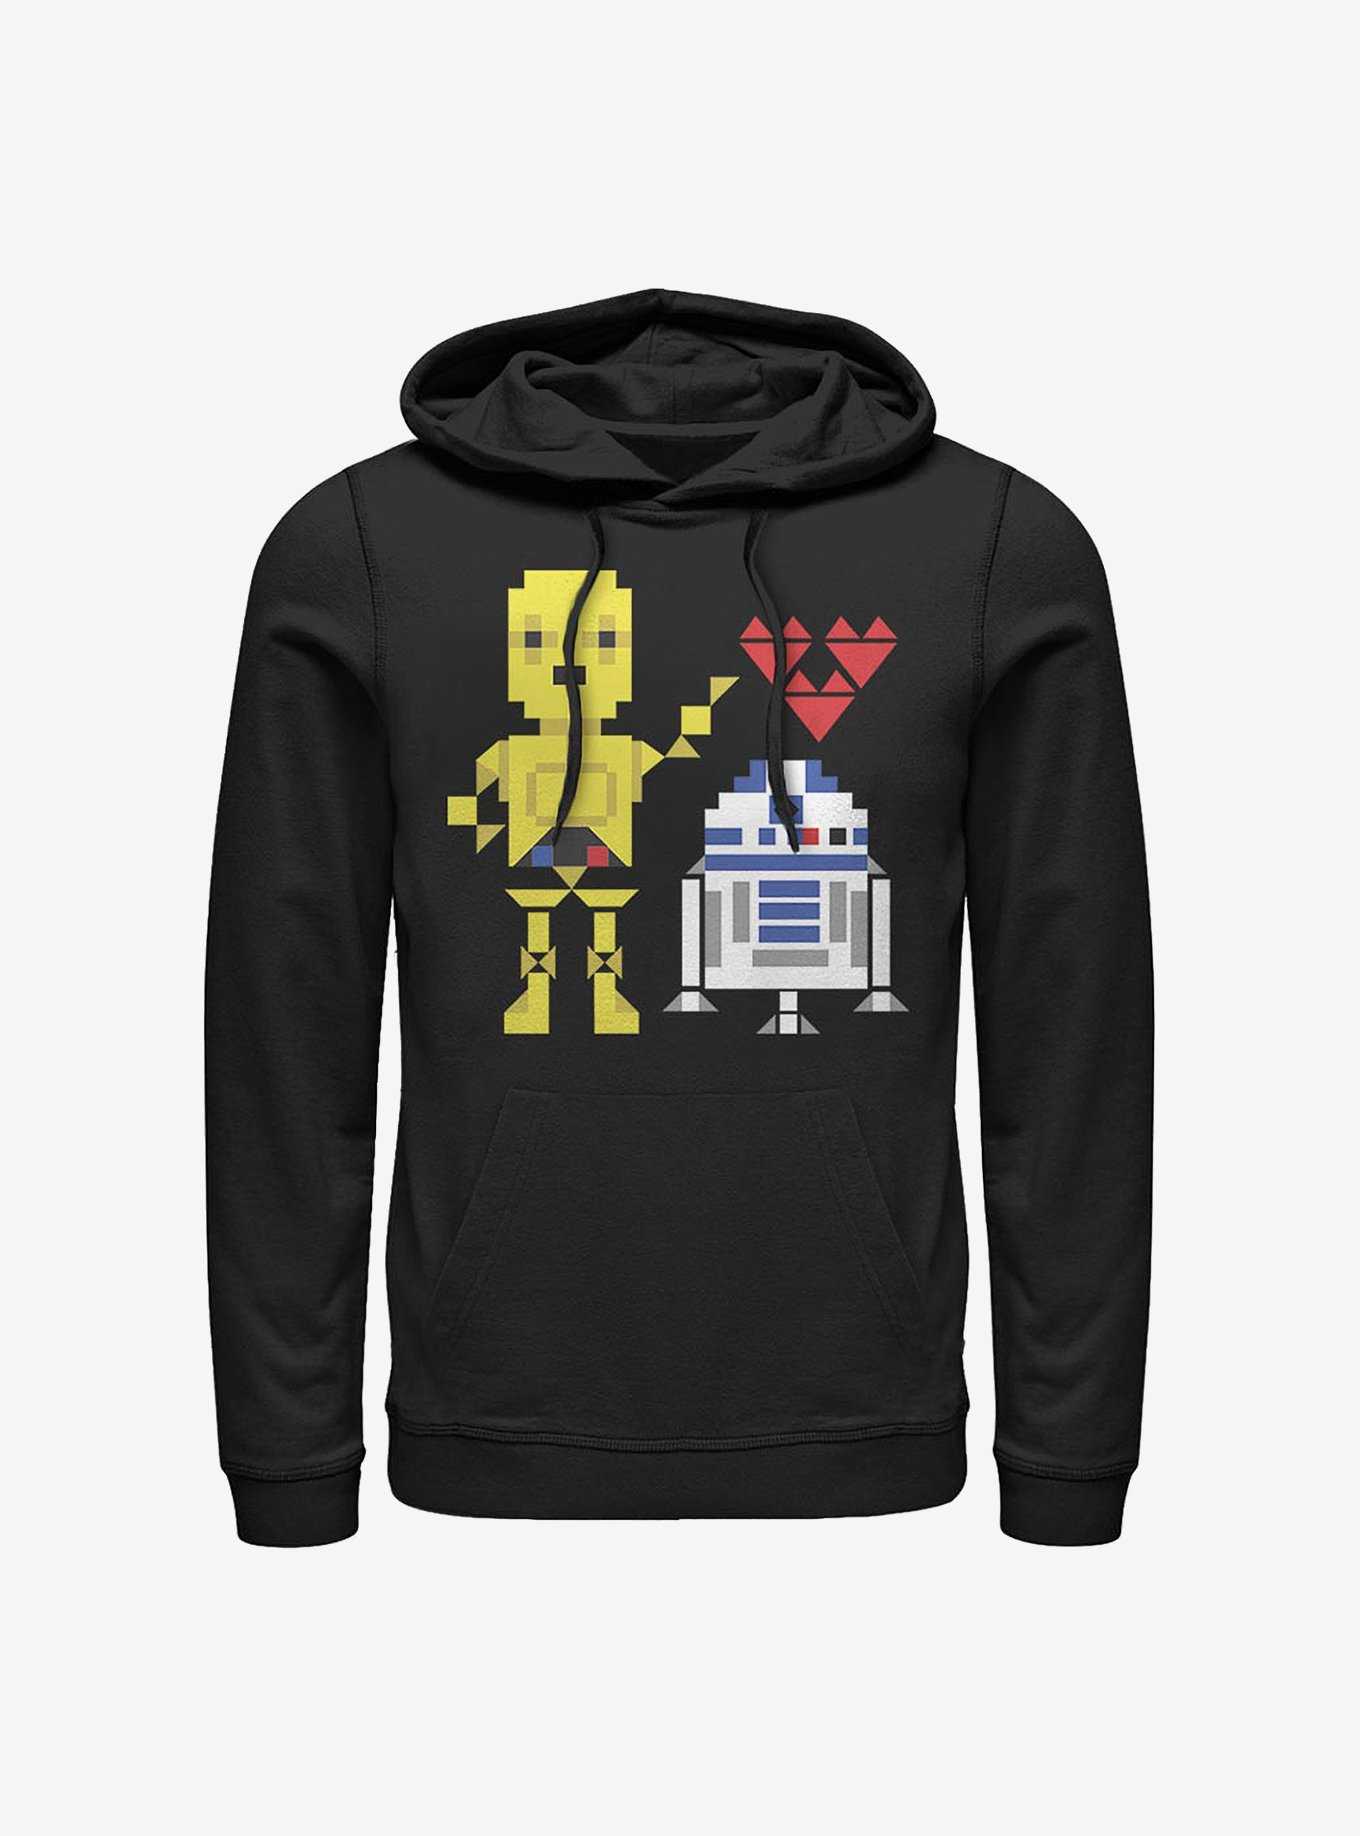 Star Wars R2-D2 C-3PO Pixel Love Hoodie, , hi-res